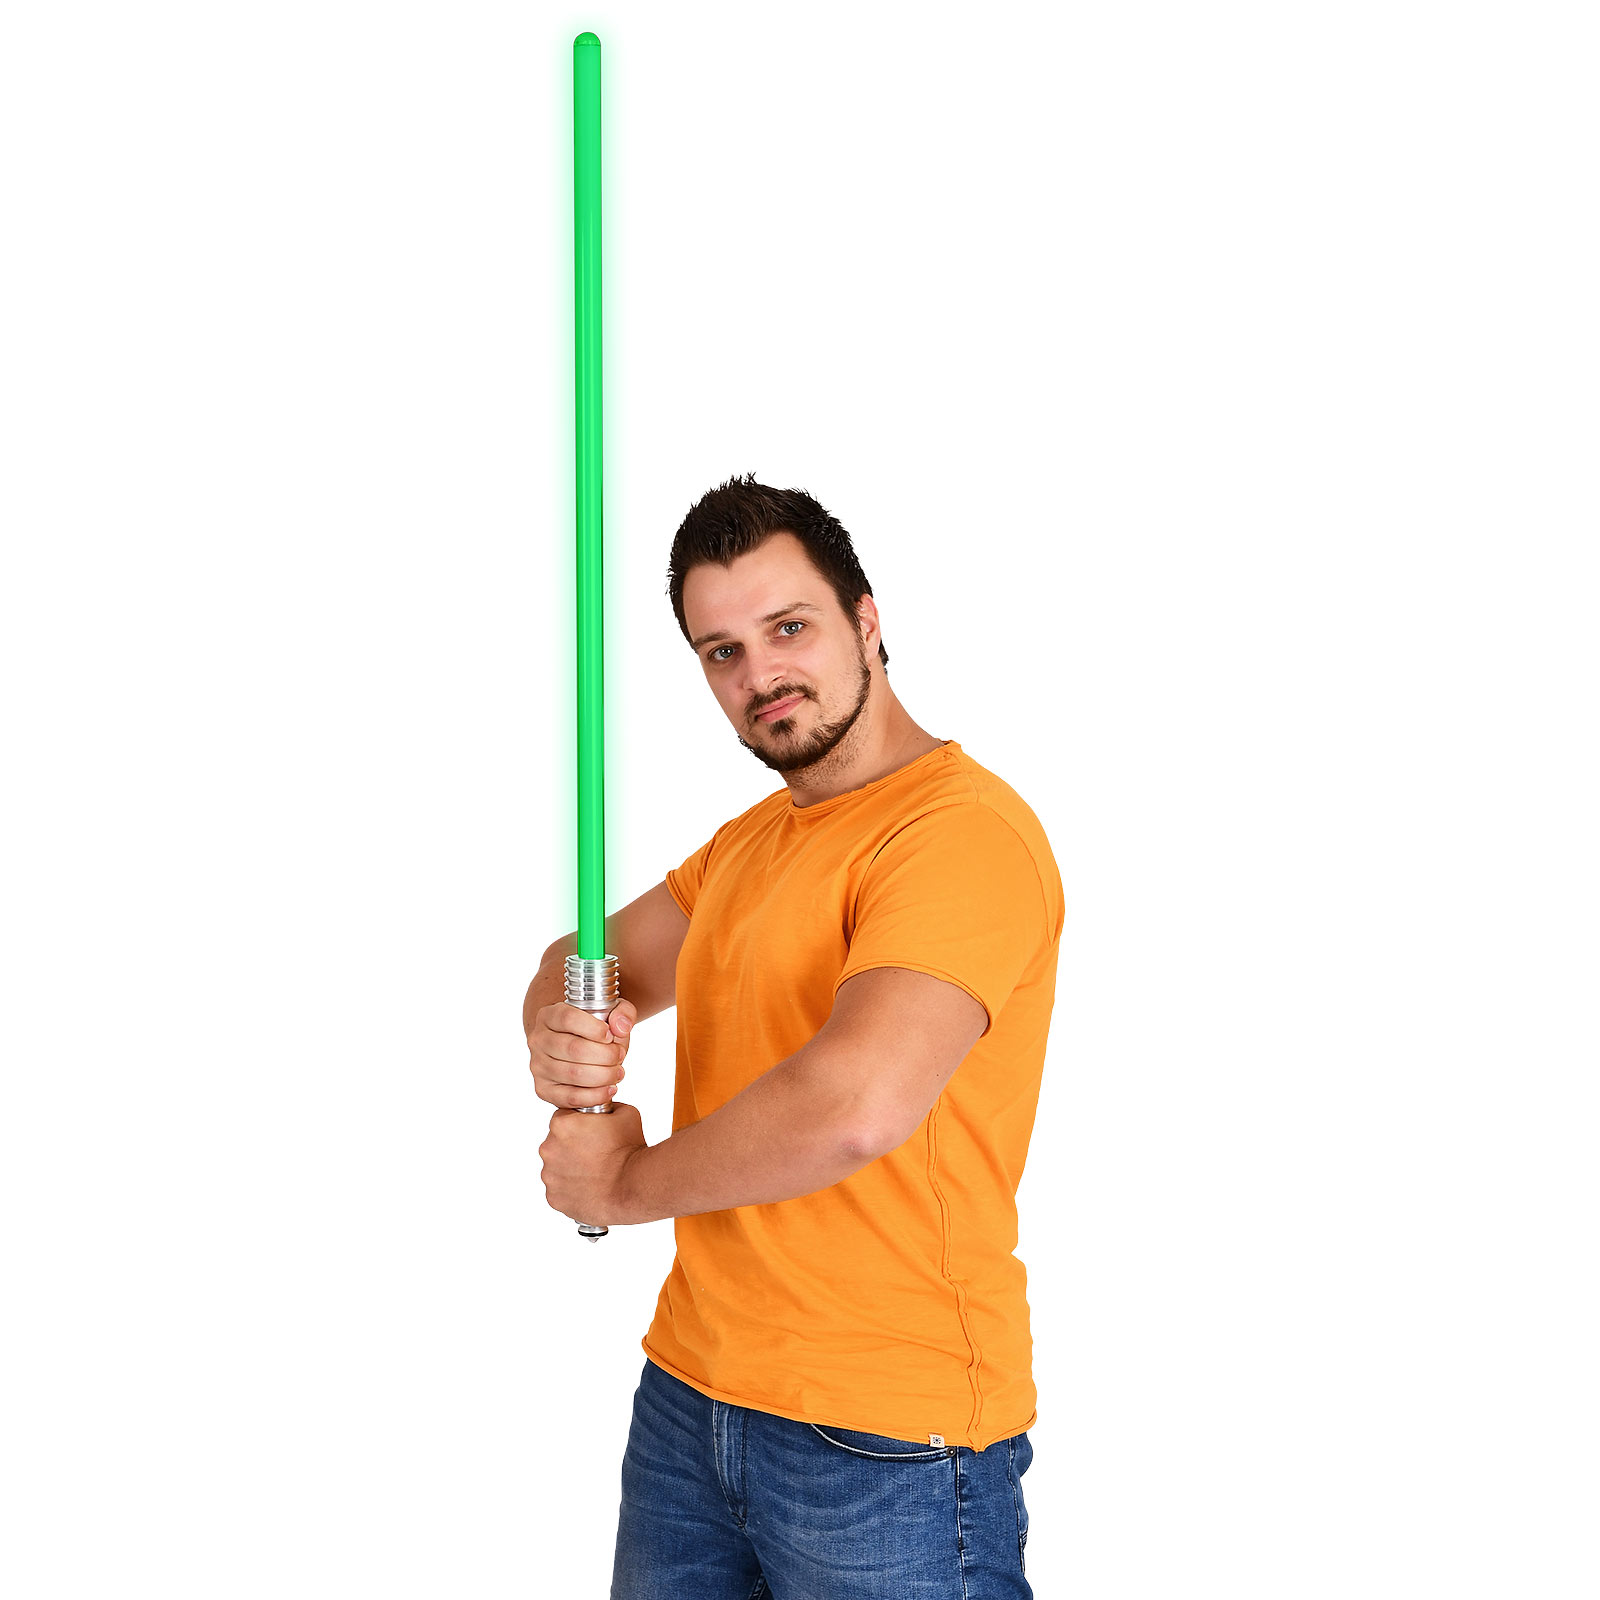 Star Wars - Kit Fisto Force FX Lichtschwert